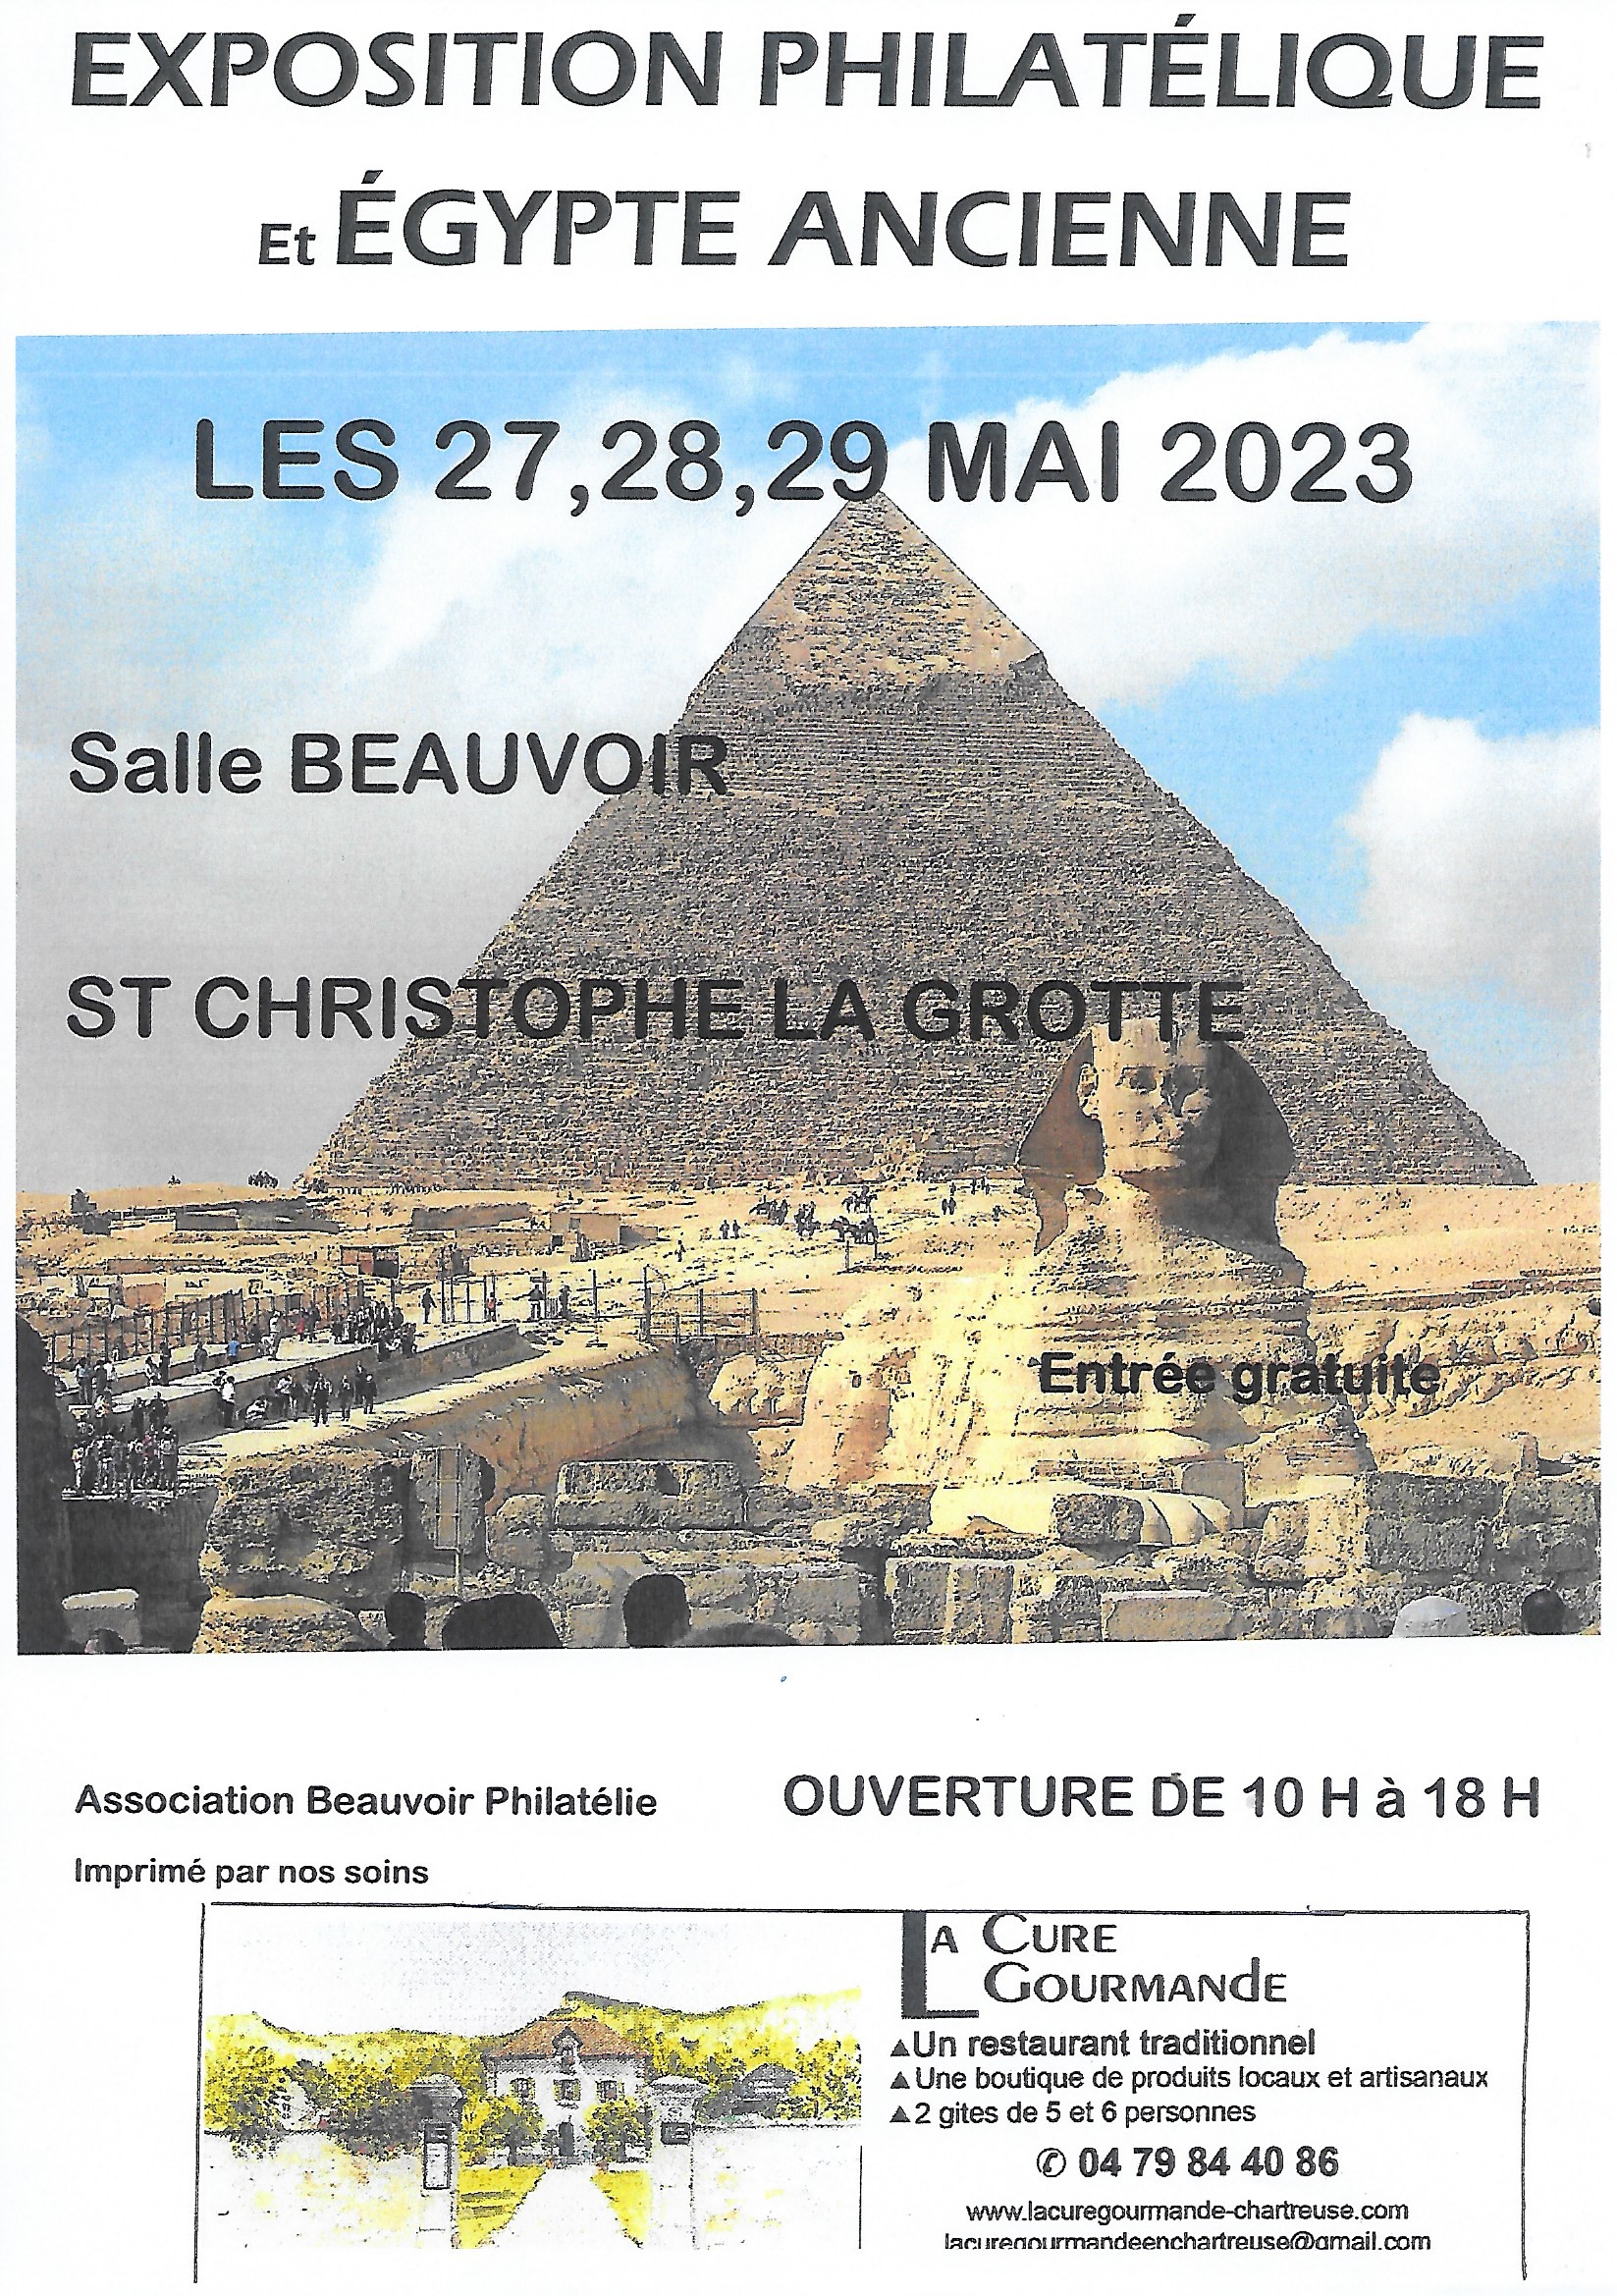 Exposition philatélique et Égypte ancienne